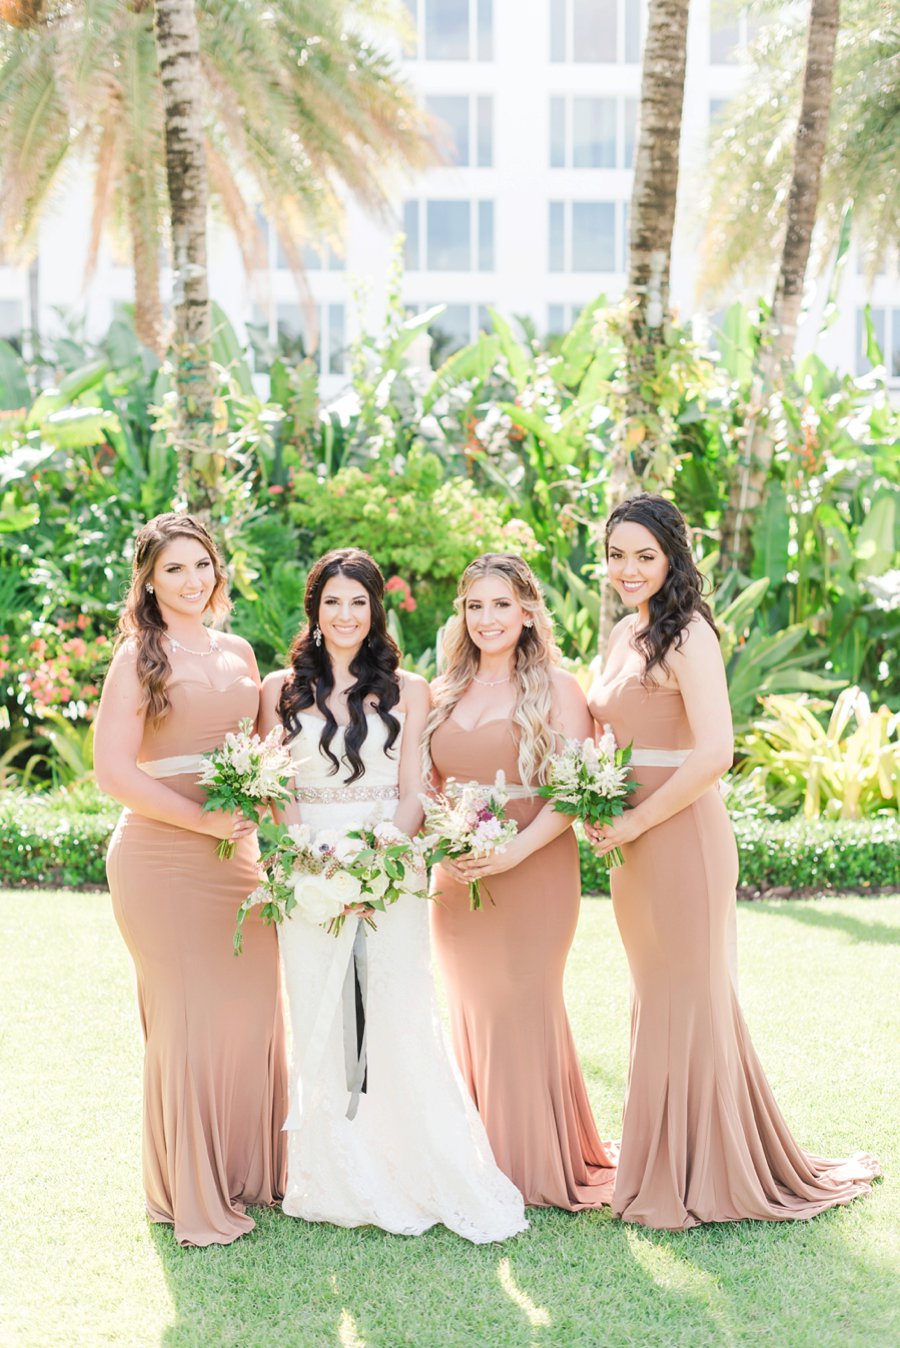 A Glamorous Black, White, & Gold Miami Wedding via TheELD.com